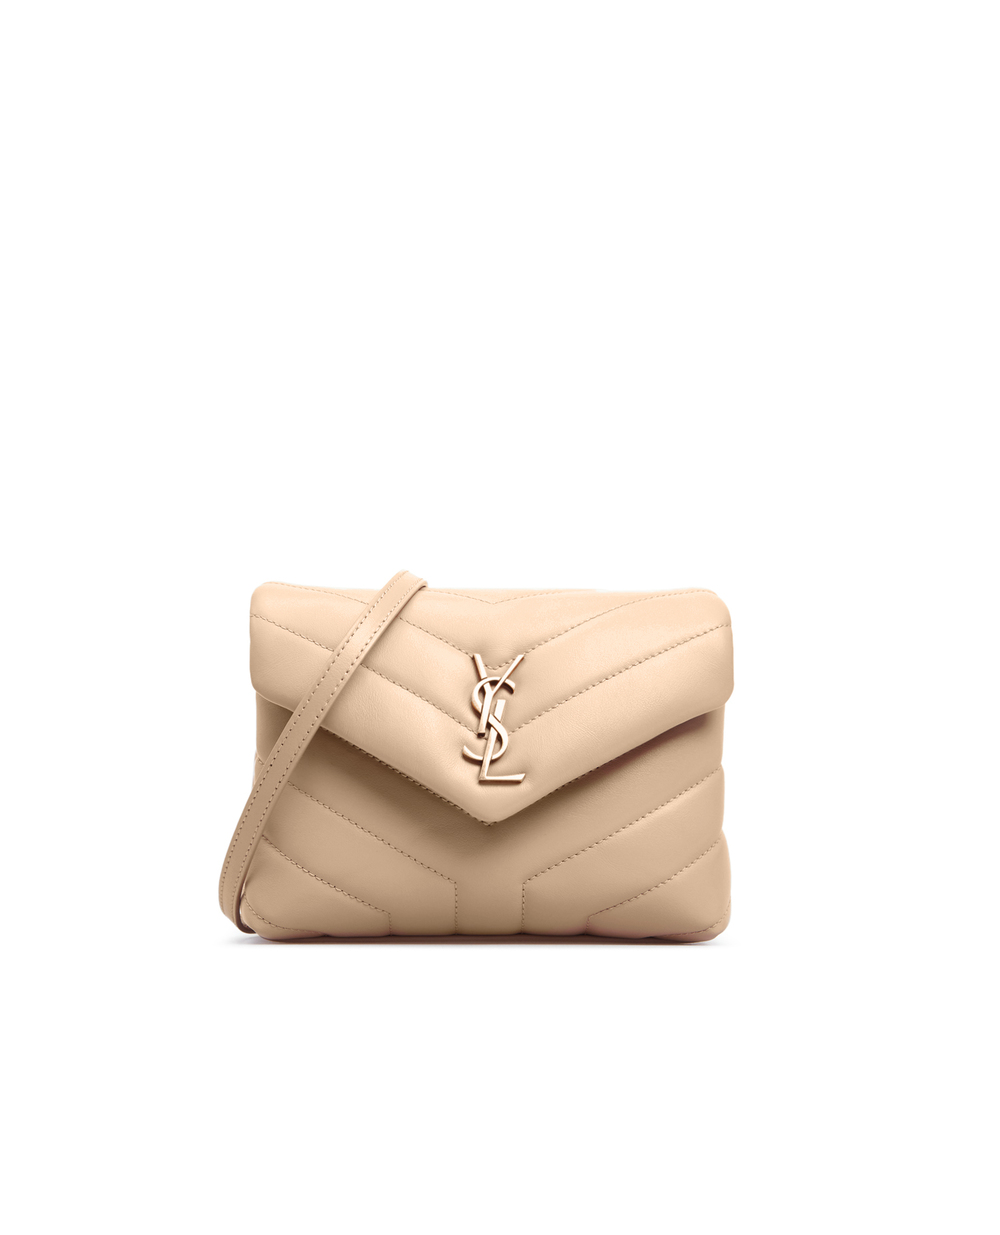 Кожаная сумка Loulou Toy Saint Laurent 678401-DV707, бежевый цвет • Купить в интернет-магазине Kameron